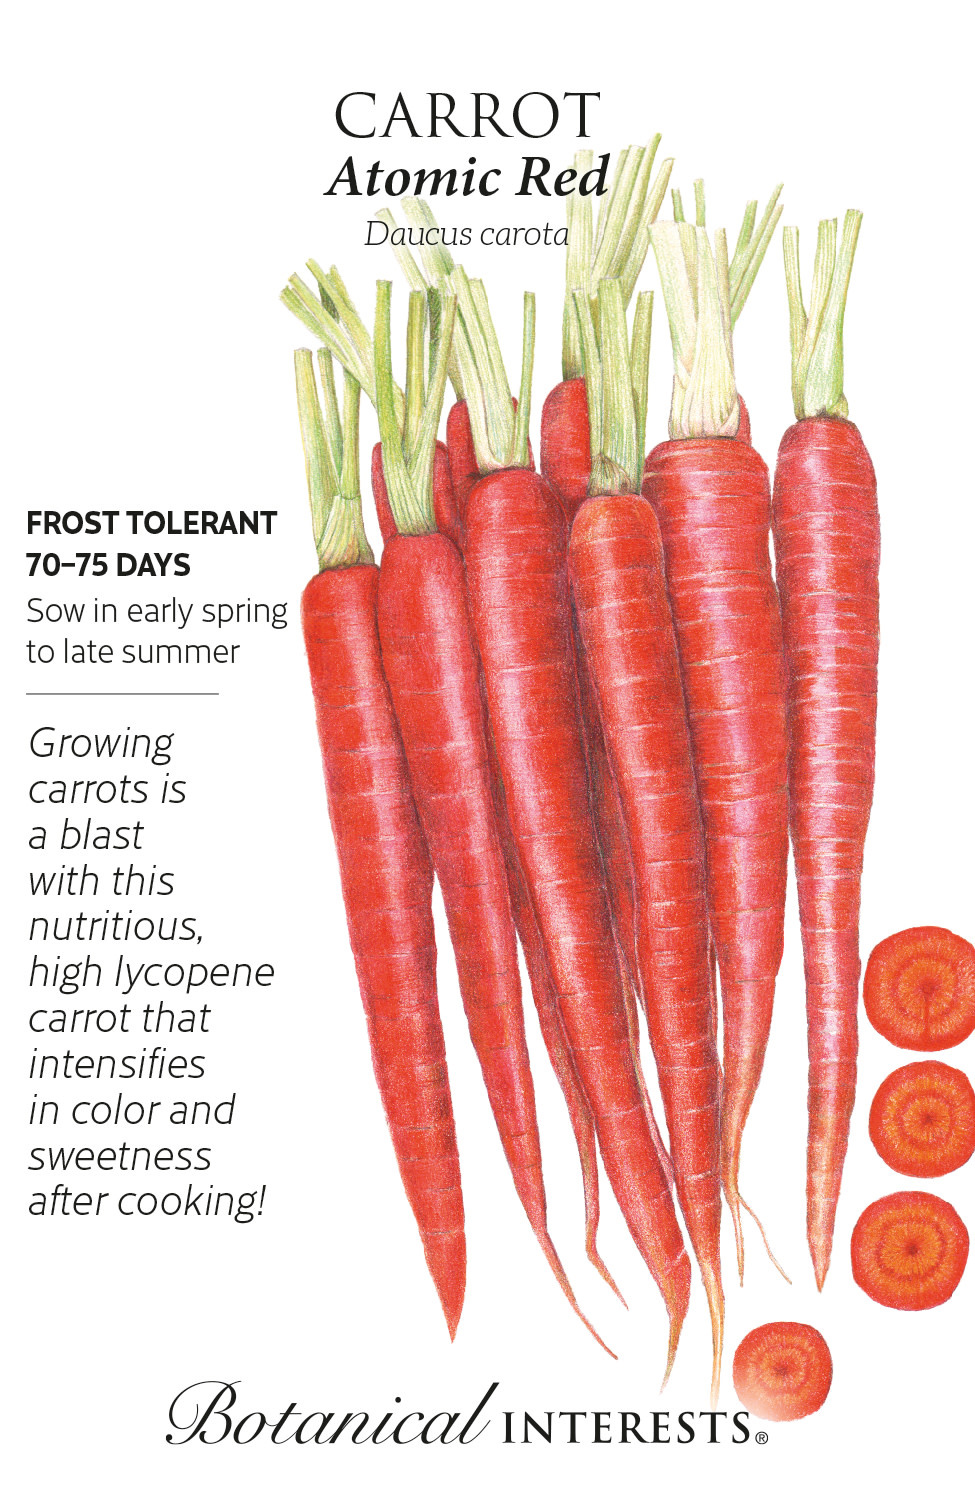 Seed Veg Carrot Atomic Red - Daucus carota